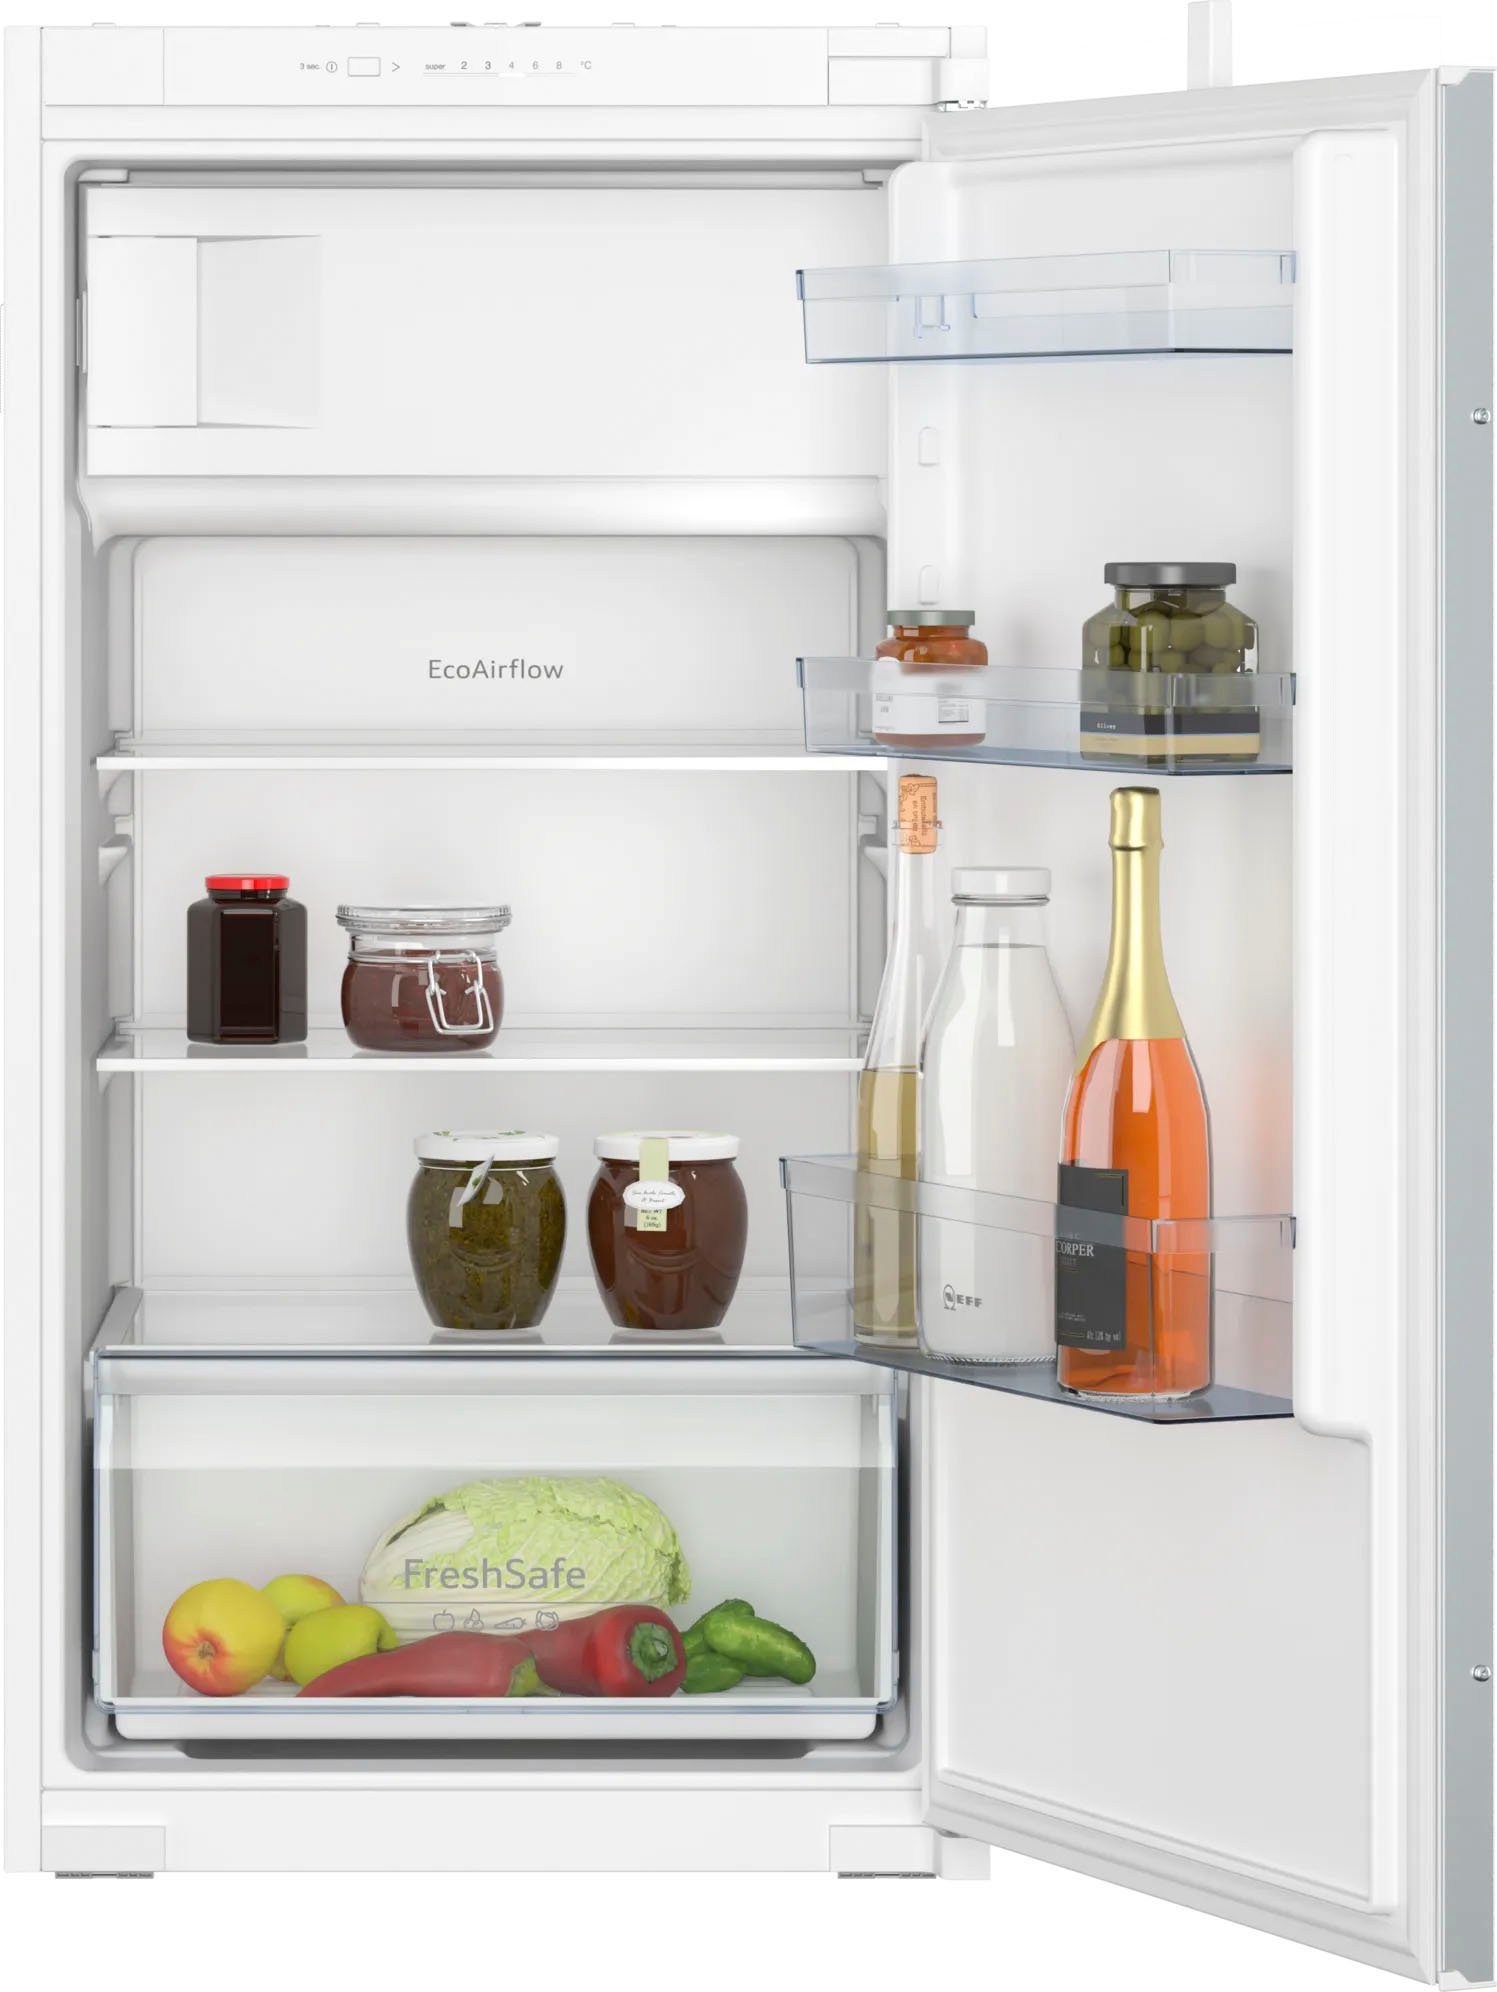 NEFF Einbaukühlschrank KI2321SE0, 102,1 cm hoch, 56 cm breit, Fresh Safe –  Schublade für flexible Lagermöglichkeiten von Obst und